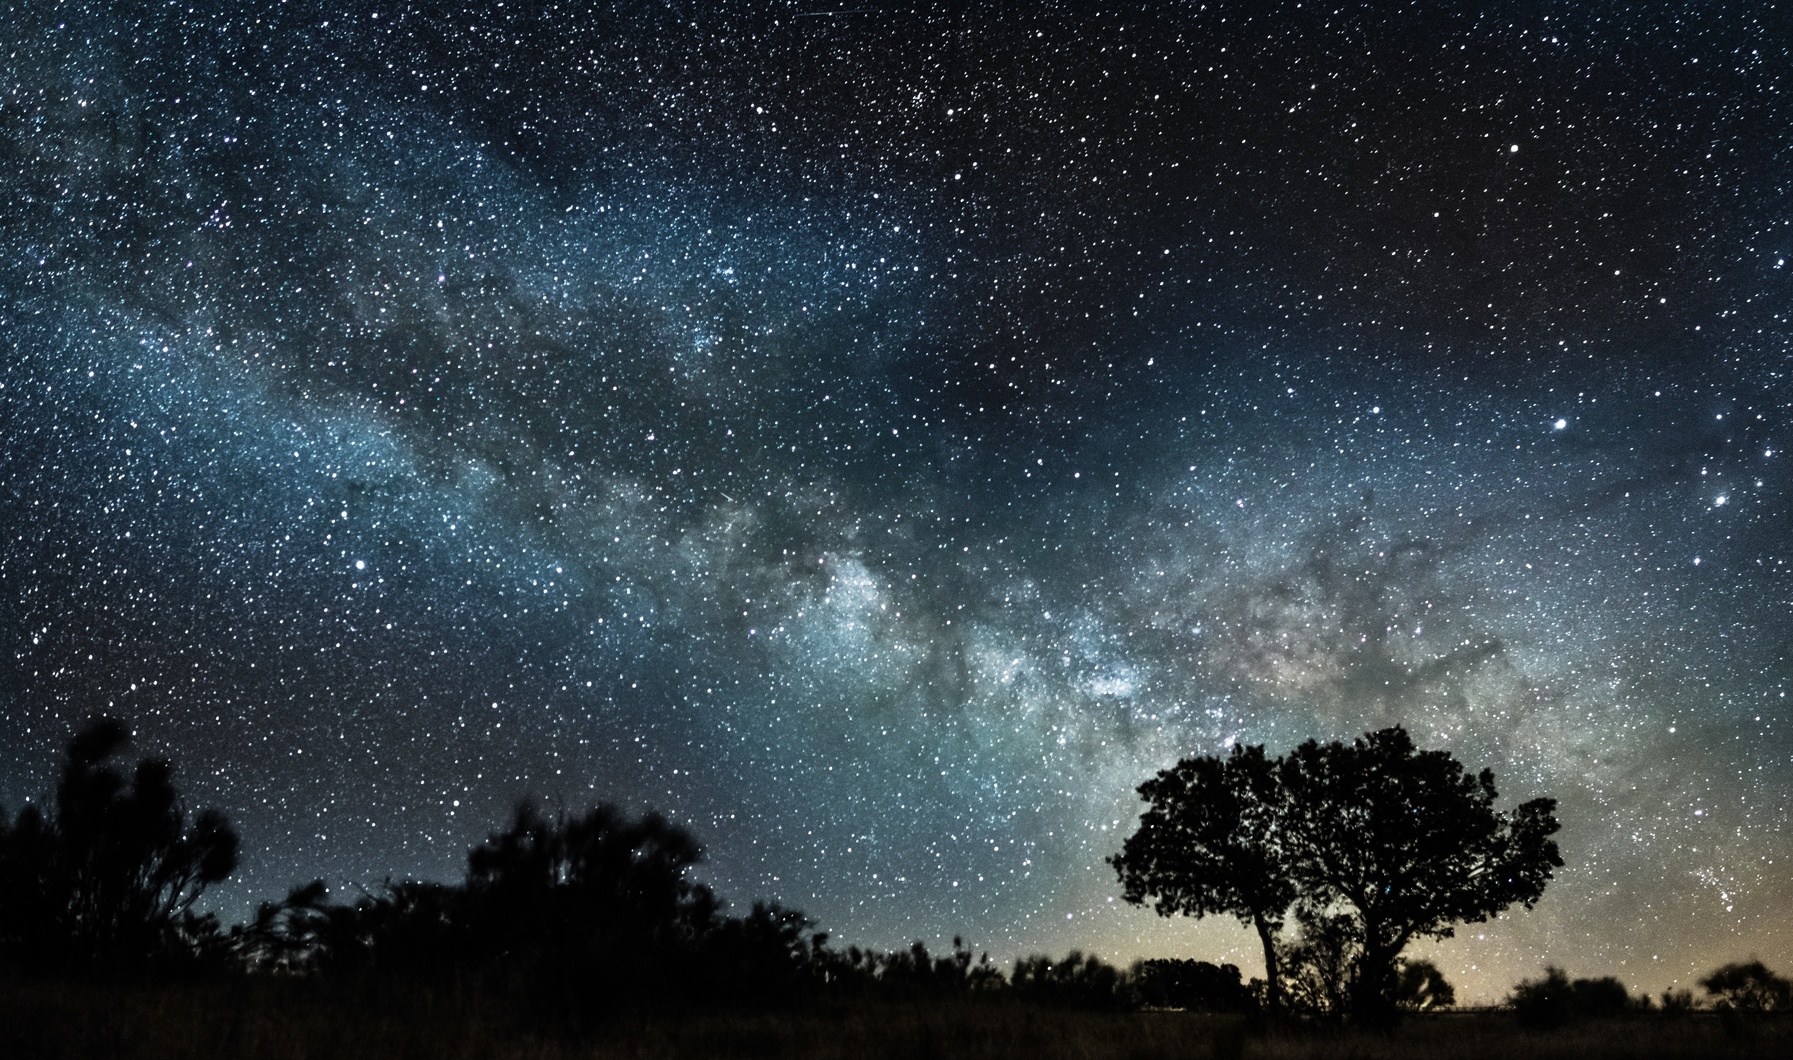 Pour voir le maximum d'étoiles à l'œil nu, mieux vaut éviter la pollution lumineuse. © Luis, fotolia